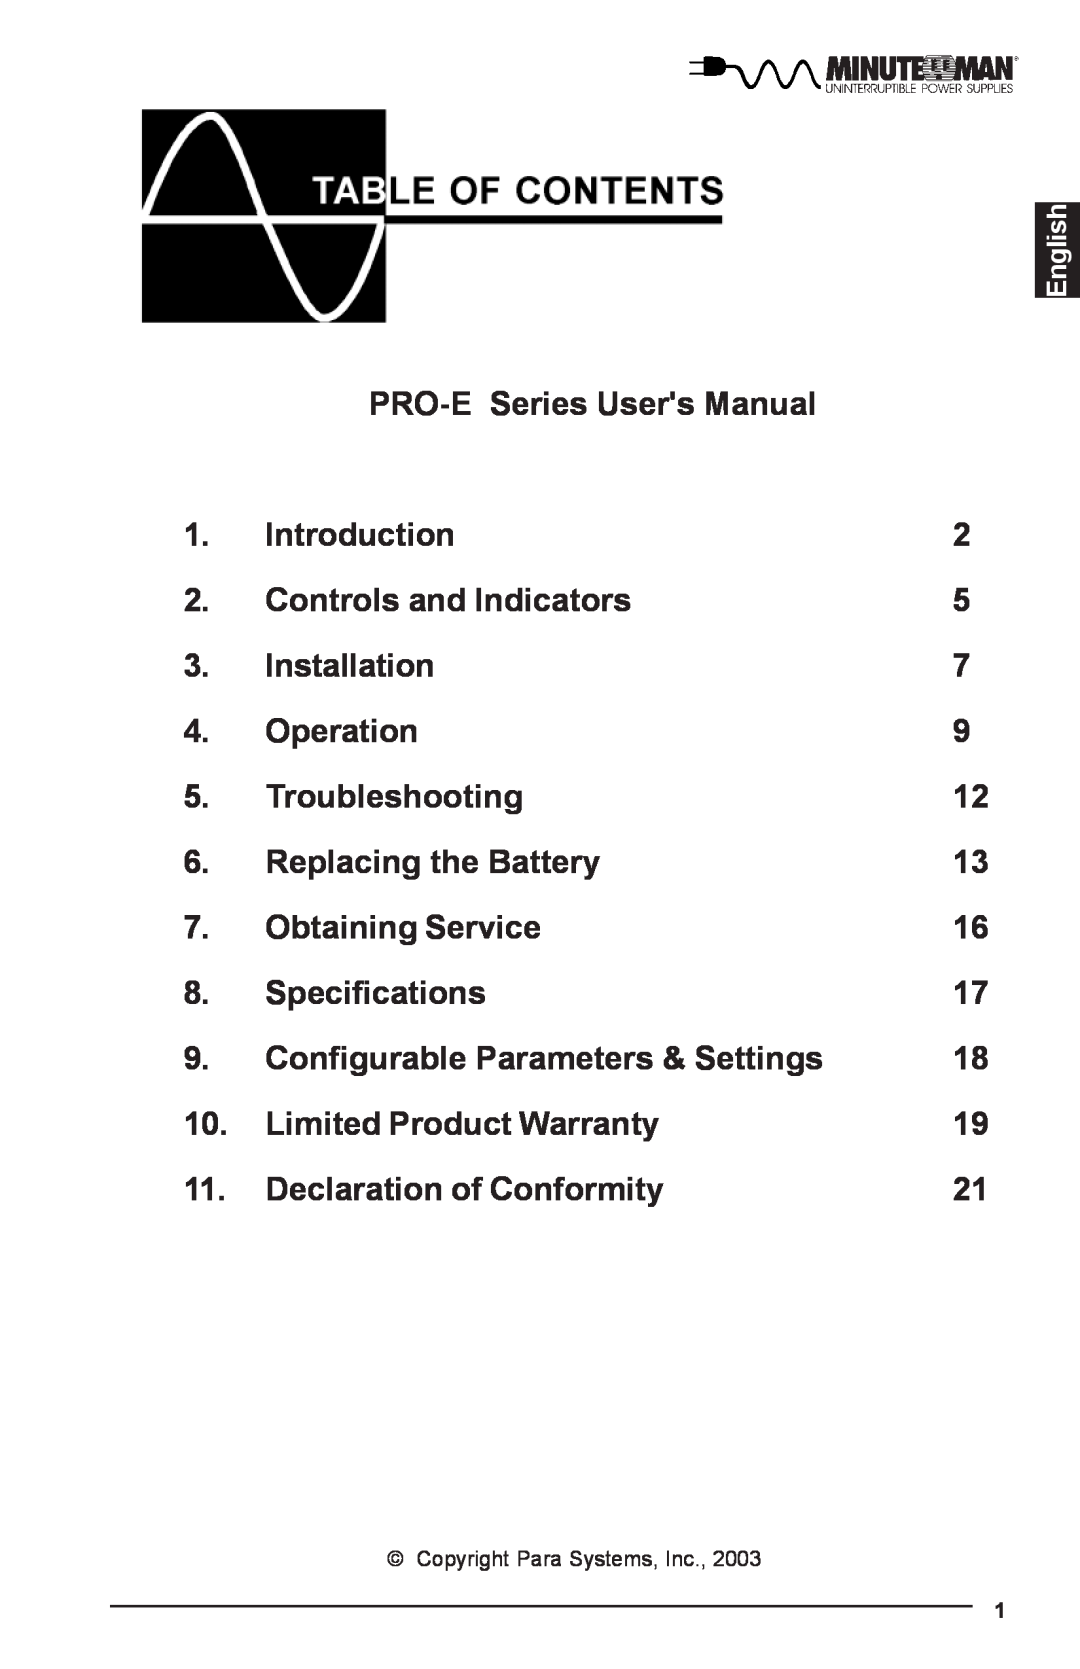 Rackmount Solutions PRO500iE, PRO700iE, PRO1500E, PRO1100E, PRO500E, PRO700E manual PRO-E Series Users Manual 